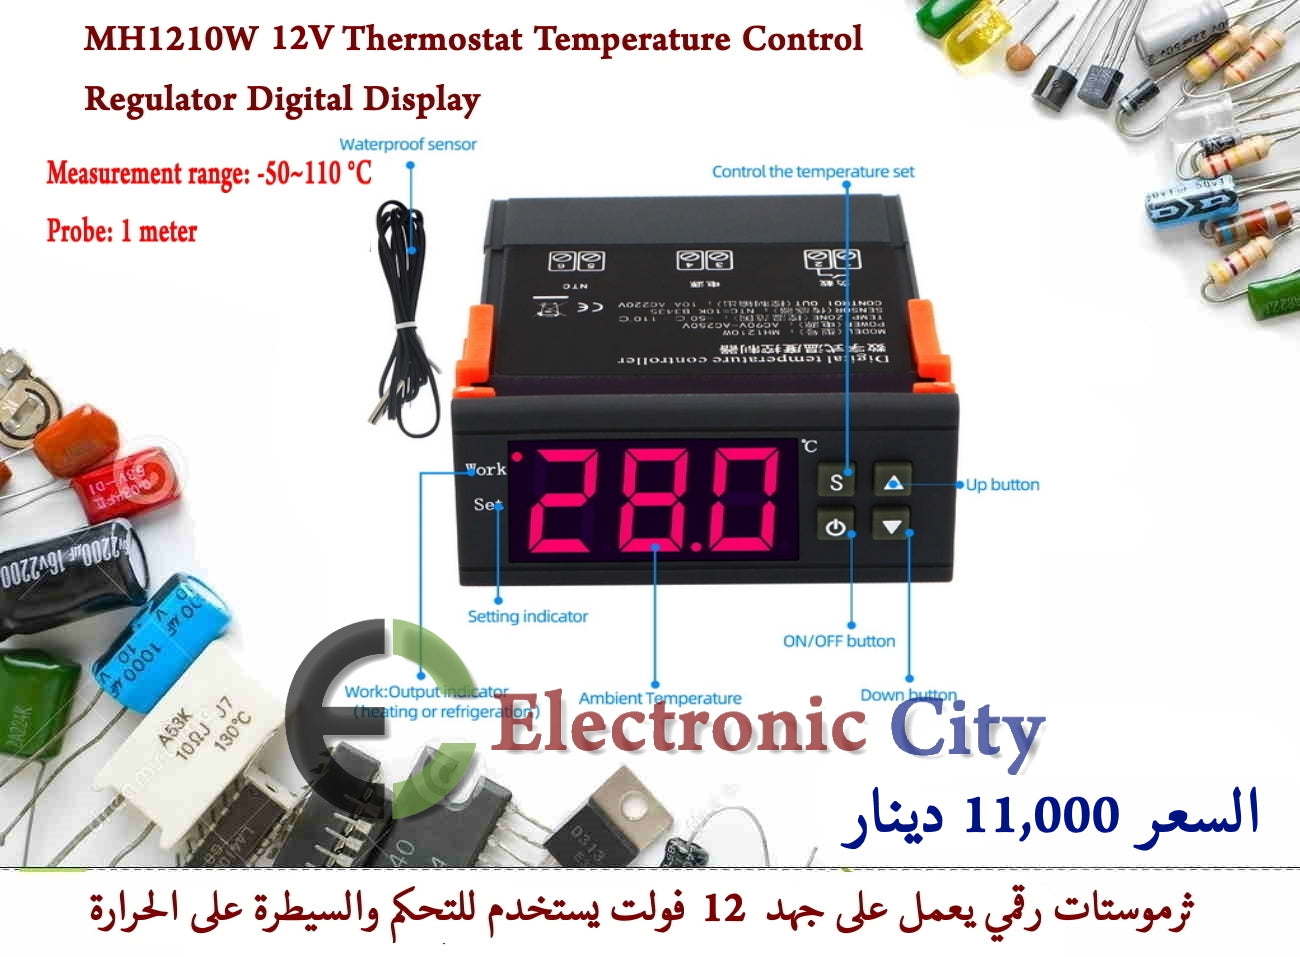 MH1210W 12V Thermostat Temperature Control Regulator Digital Display #J9 X-CX0086B